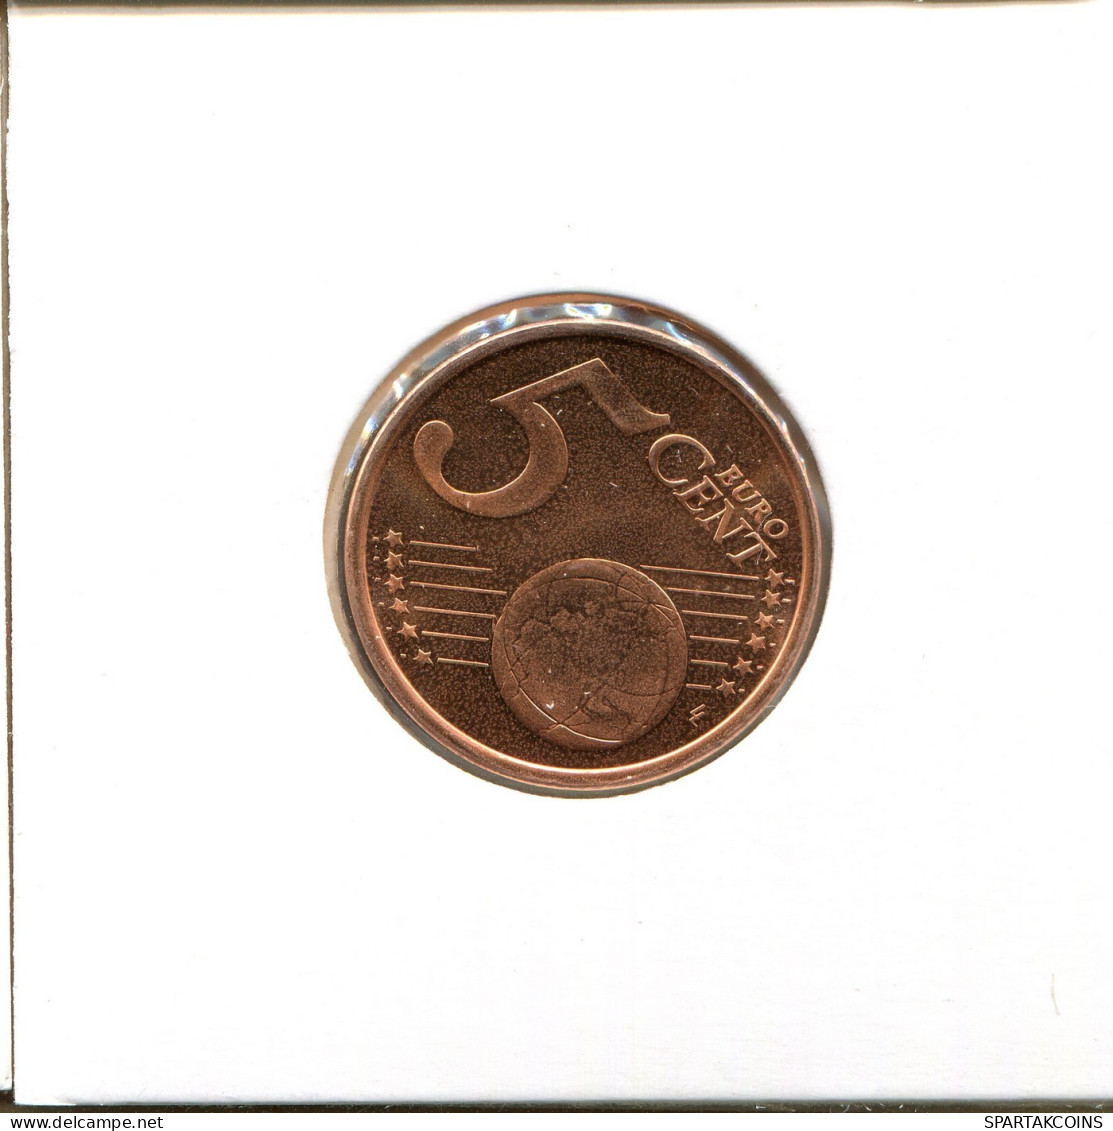 5 EURO CENTS 2008 ZYPERN CYPRUS Münze #EU424.D.A - Zypern